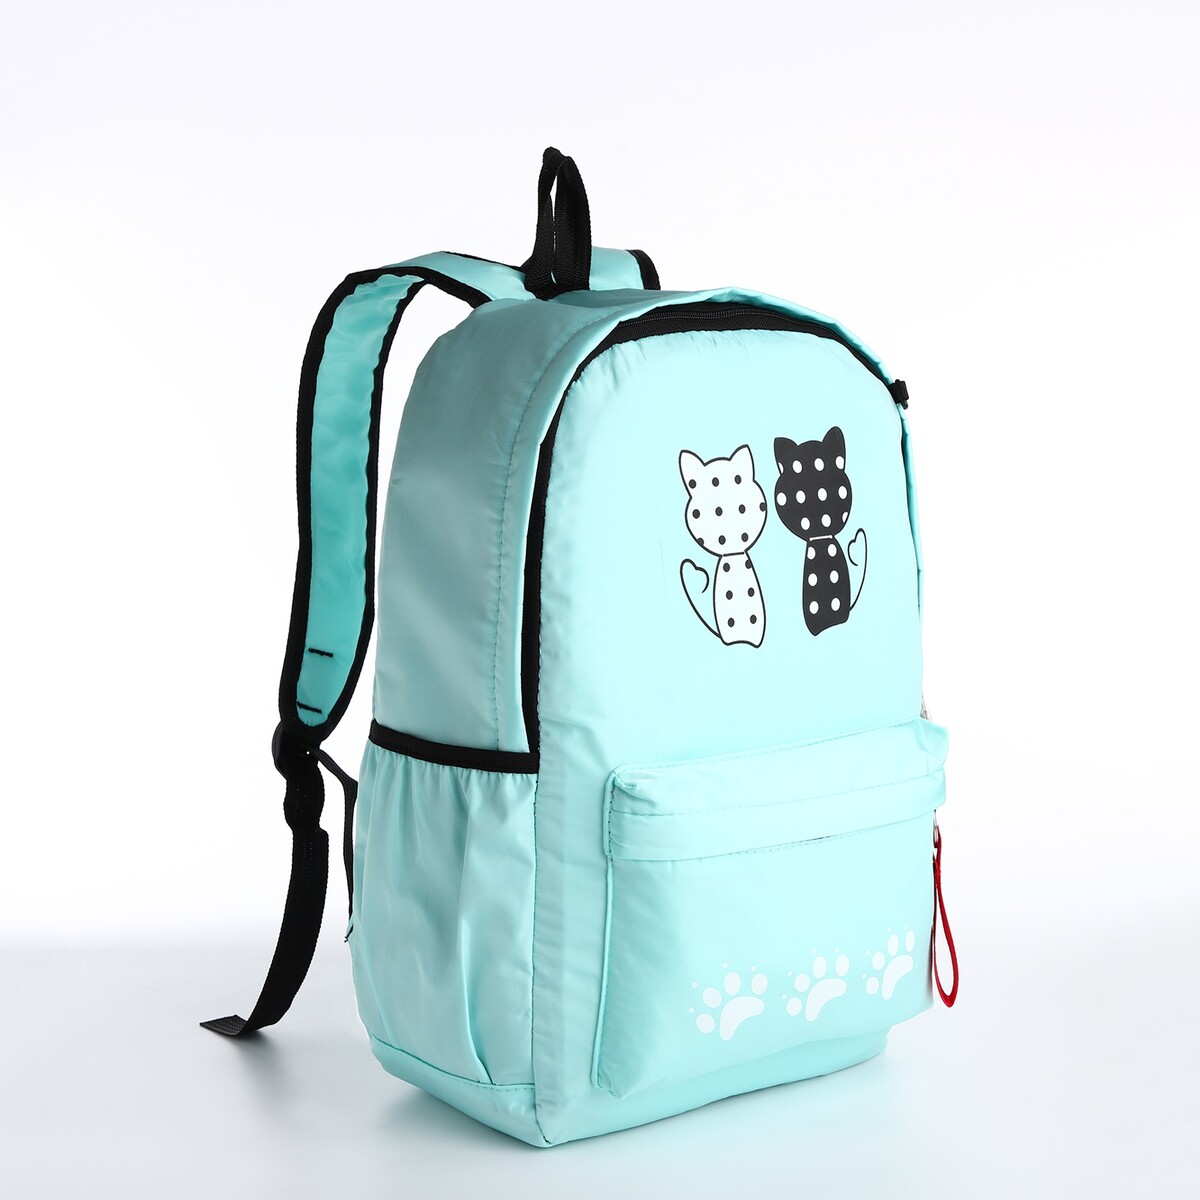 Рюкзак молодежный из текстиля, 3 кармана, кошелек, цвет мятный рюкзак школьный из текстиля на молнии 3 кармана бирюзовый